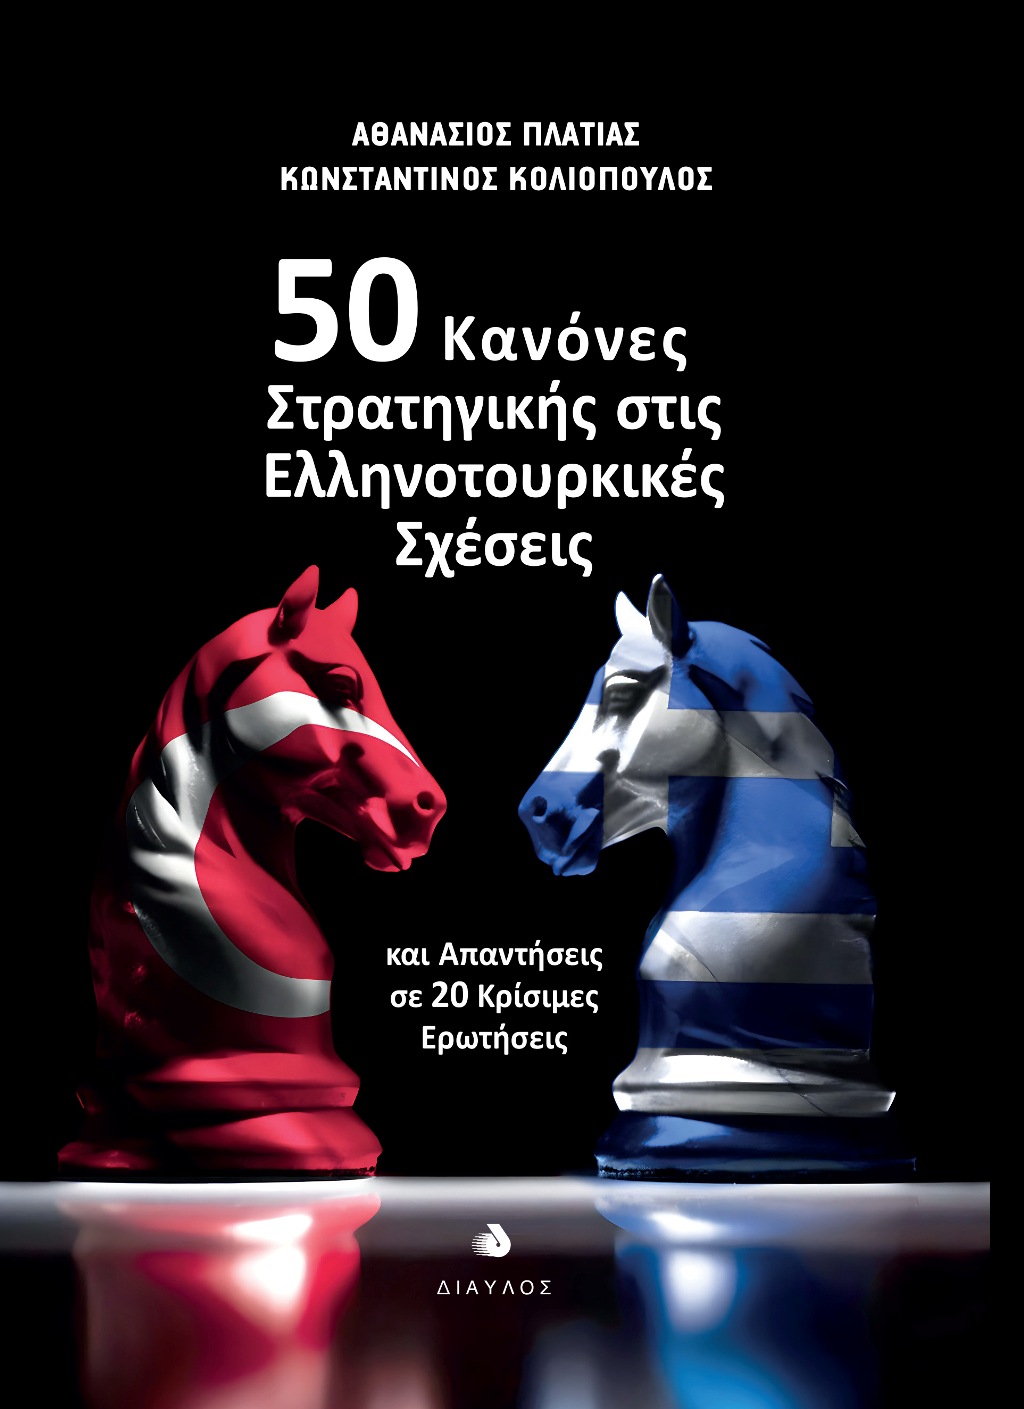 50 Κανόνες Στρατηγικής στις Ελληνοτουρκικές Σχέσεις - και Απαντήσεις σε 20 Κρίσιμες Ερωτήσεις, Αθανάσιος Πλατιάς, Κωνσταντίνος Κολιόπουλος